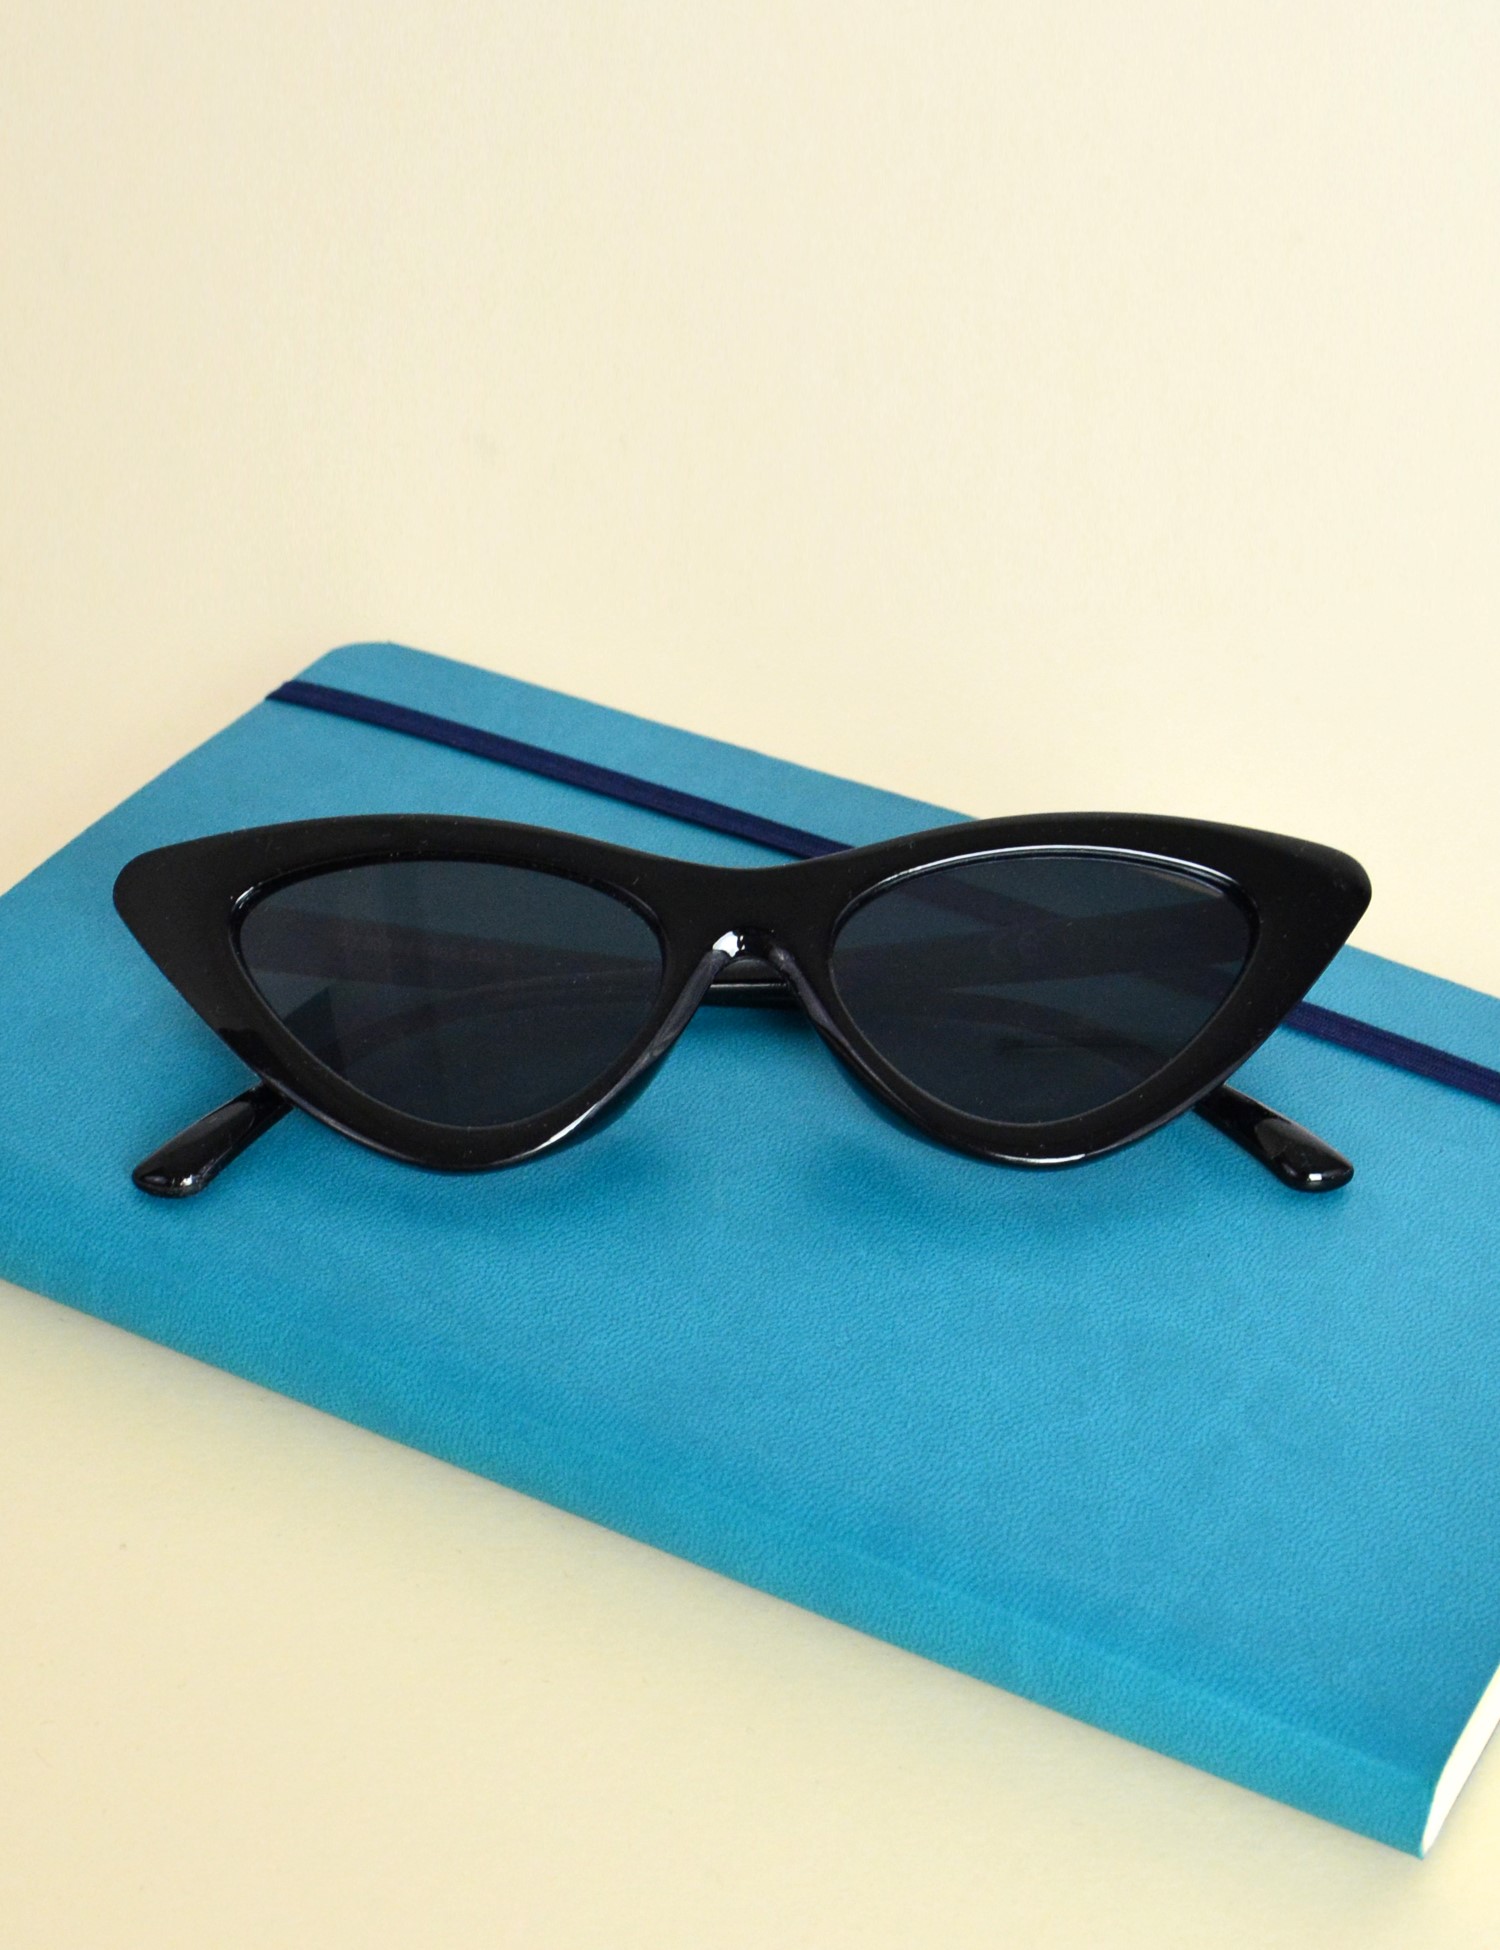 Γυναικεία γυαλιά cat eye κοκκάλινα μαύρα Premium S3082